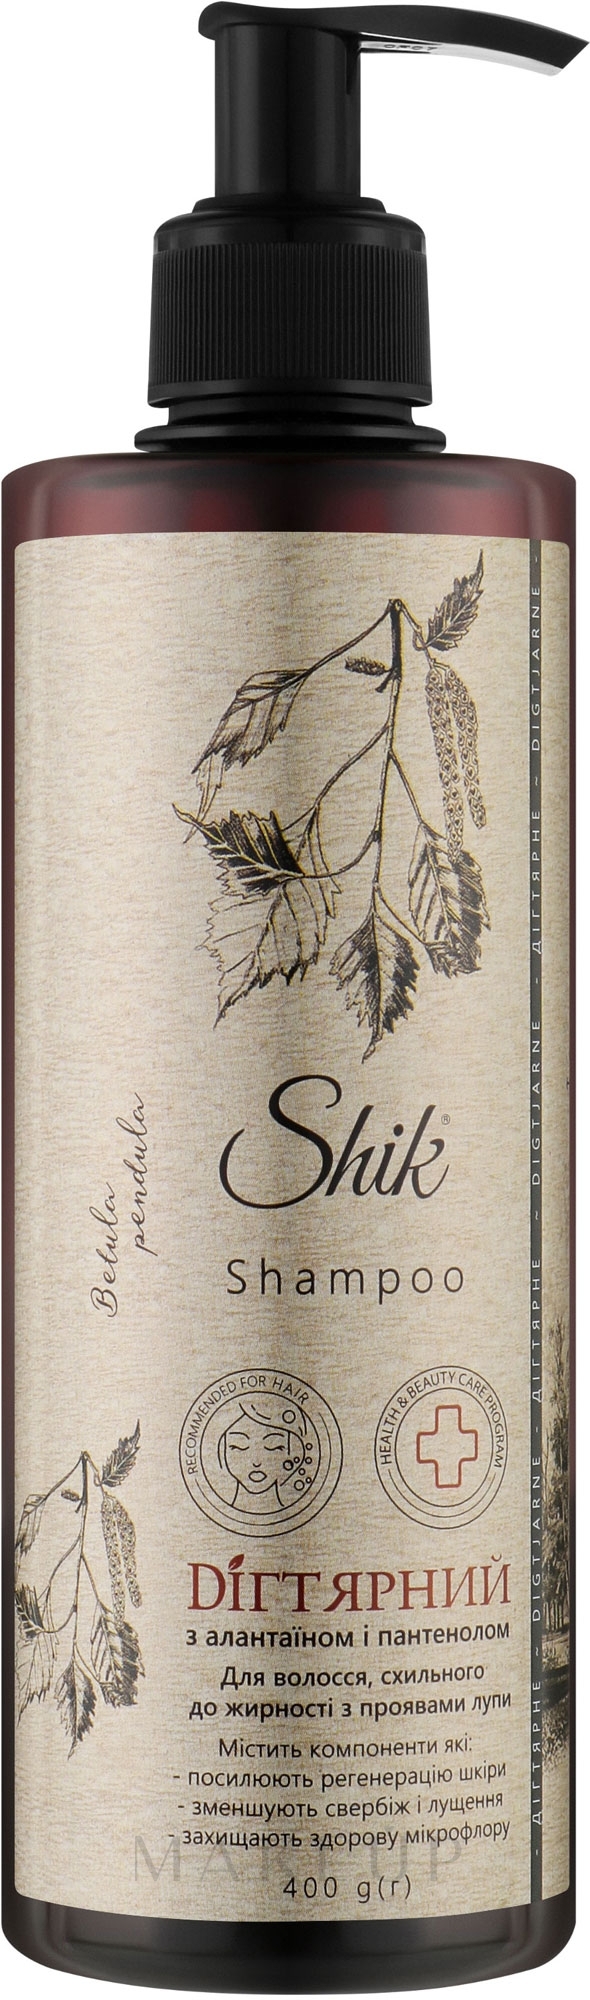 Teershampoo für fettiges und zu Schuppen neigendes Haar - Shik Shampoo — Bild 400 g